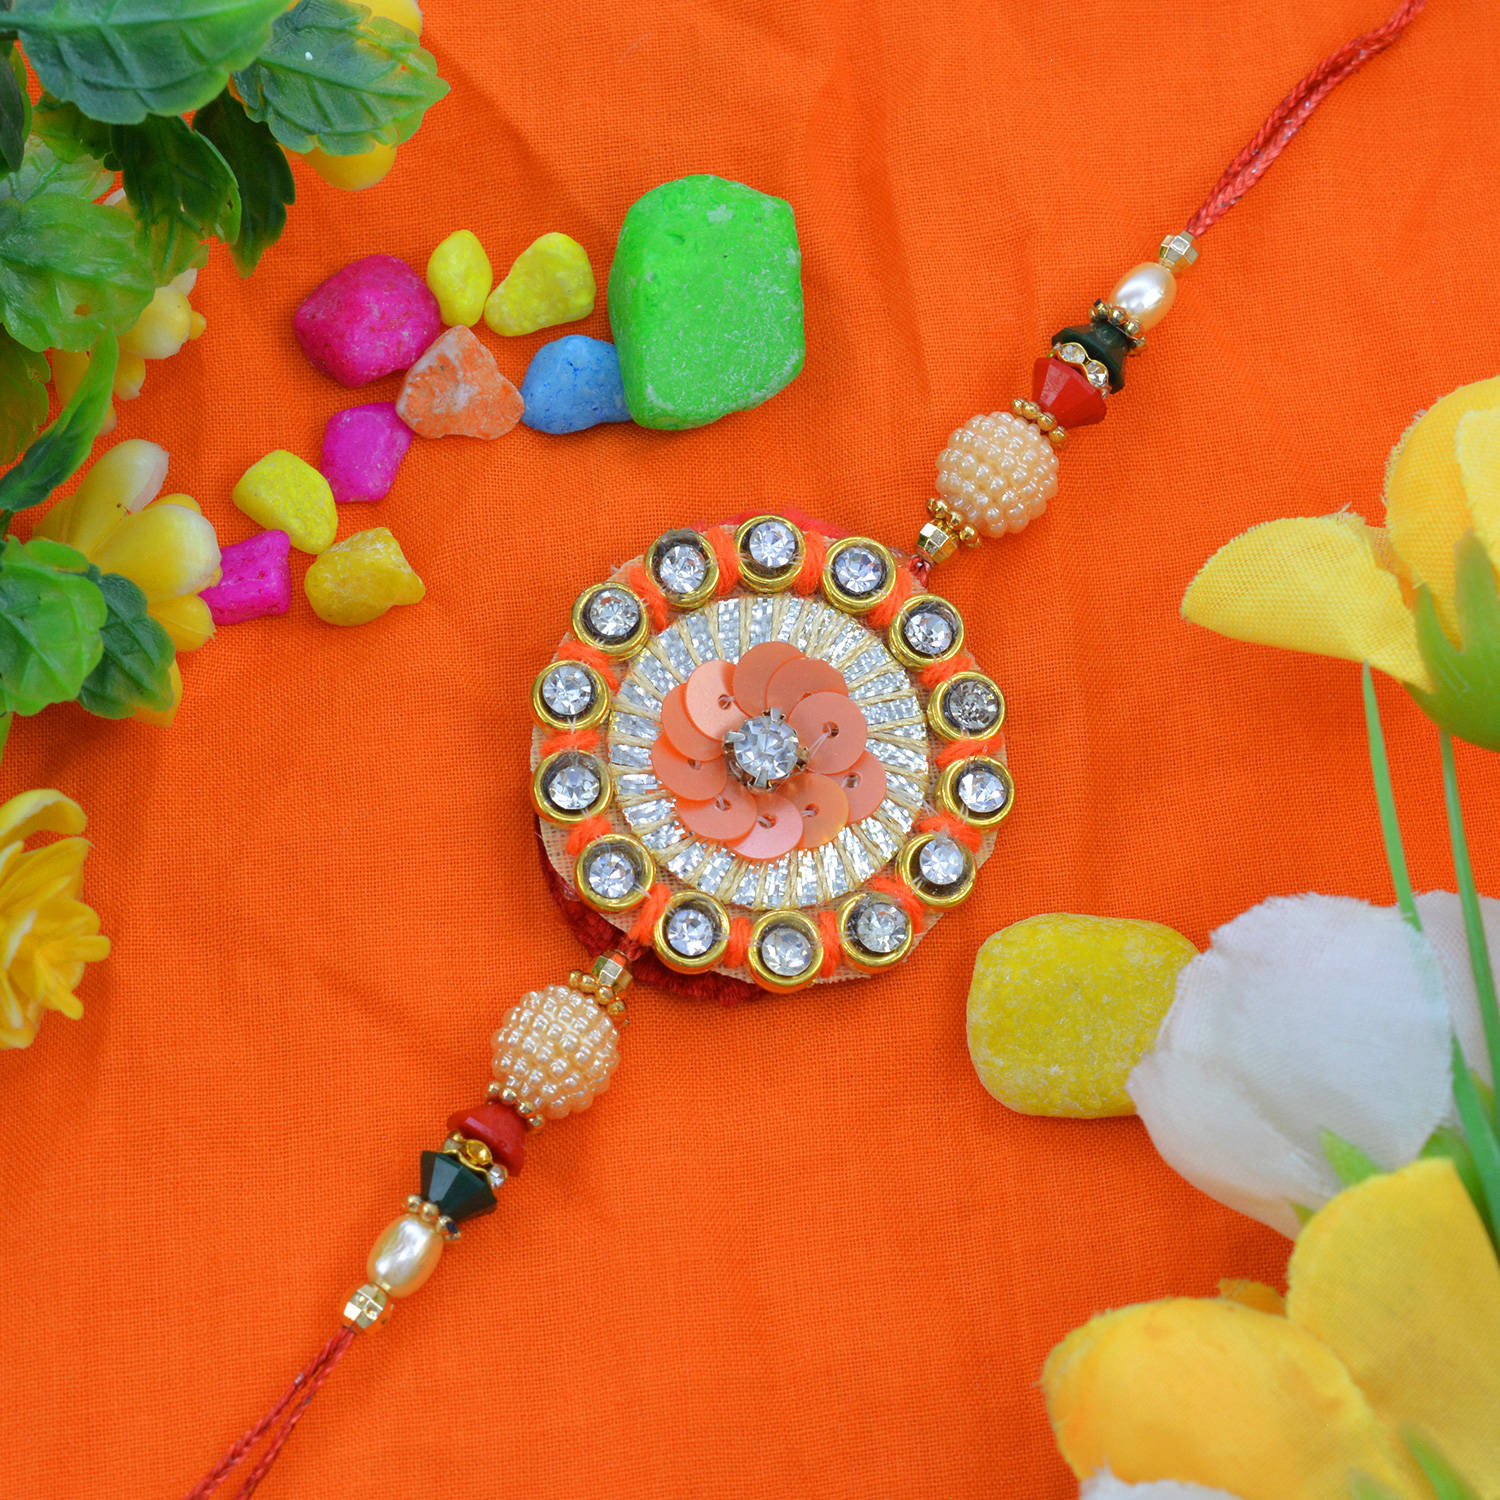 Marvelous Beads Design with Awesome Dori Zardosi Rakhi 